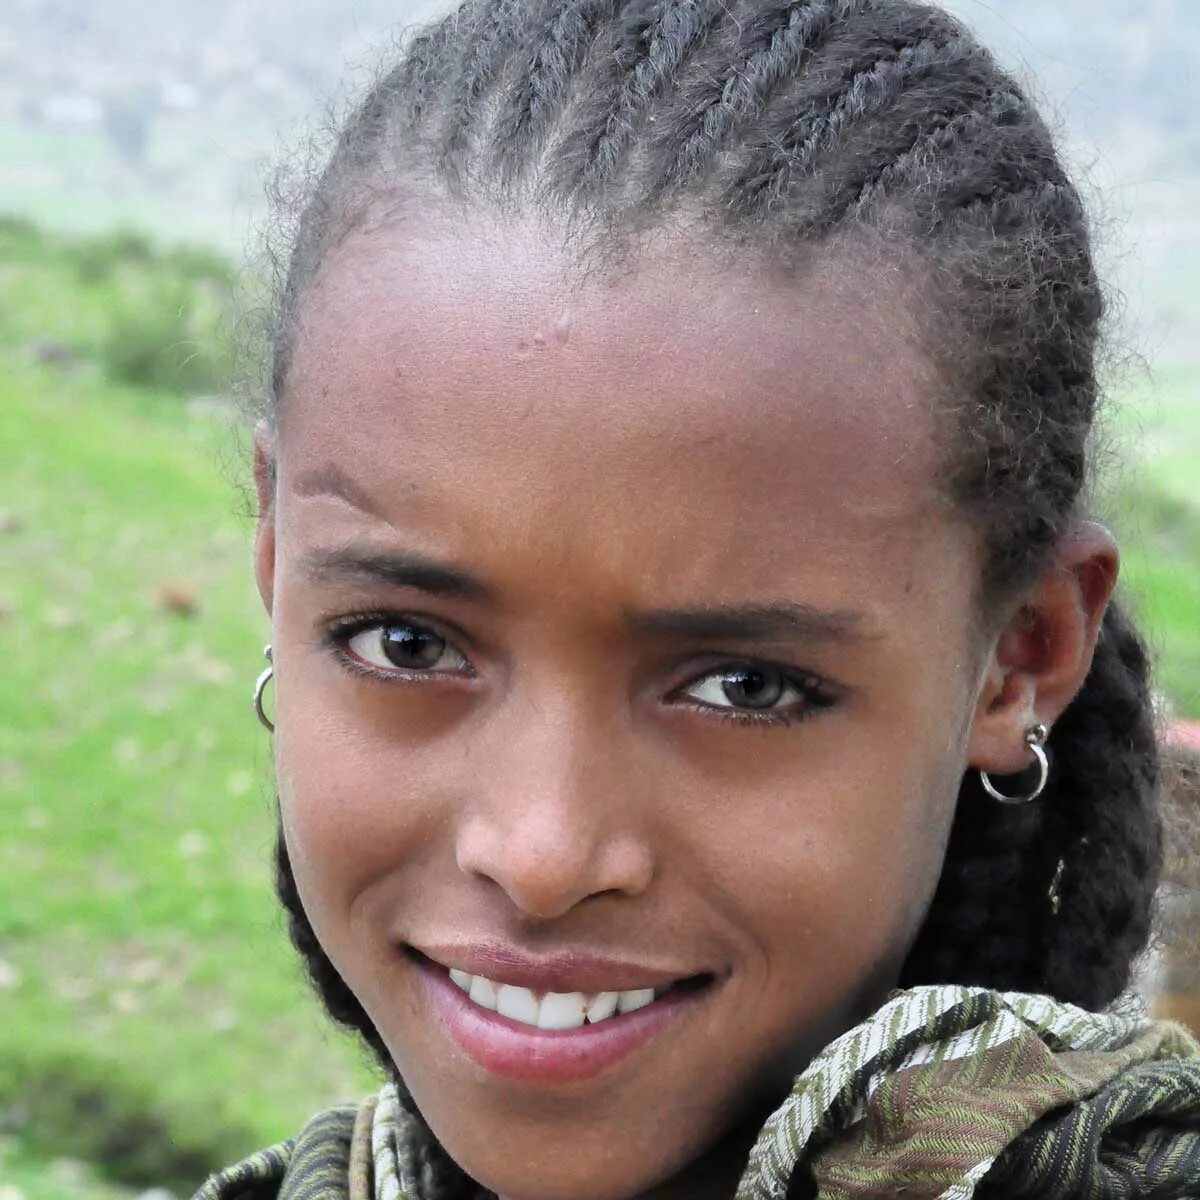 Эфиоп. Австралоидная раса. Мальгаши раса. Абиссинцы эфиопы. Восточноафриканская (эфиопская) раса.